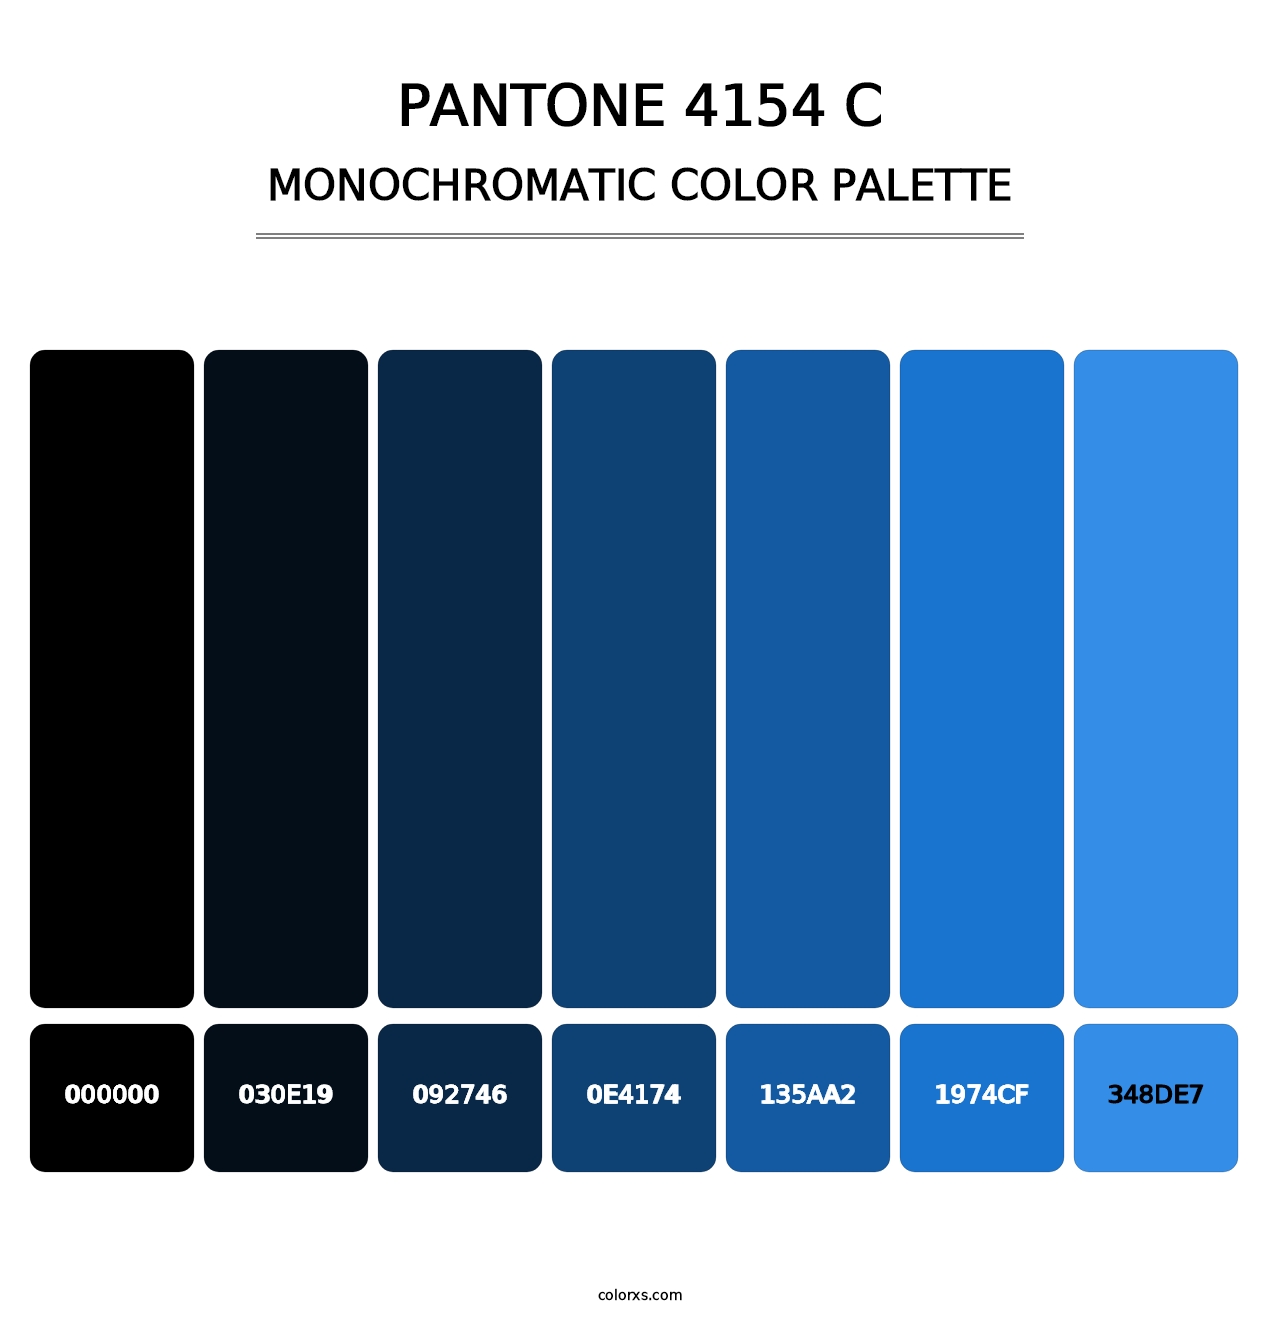 PANTONE 4154 C - Monochromatic Color Palette